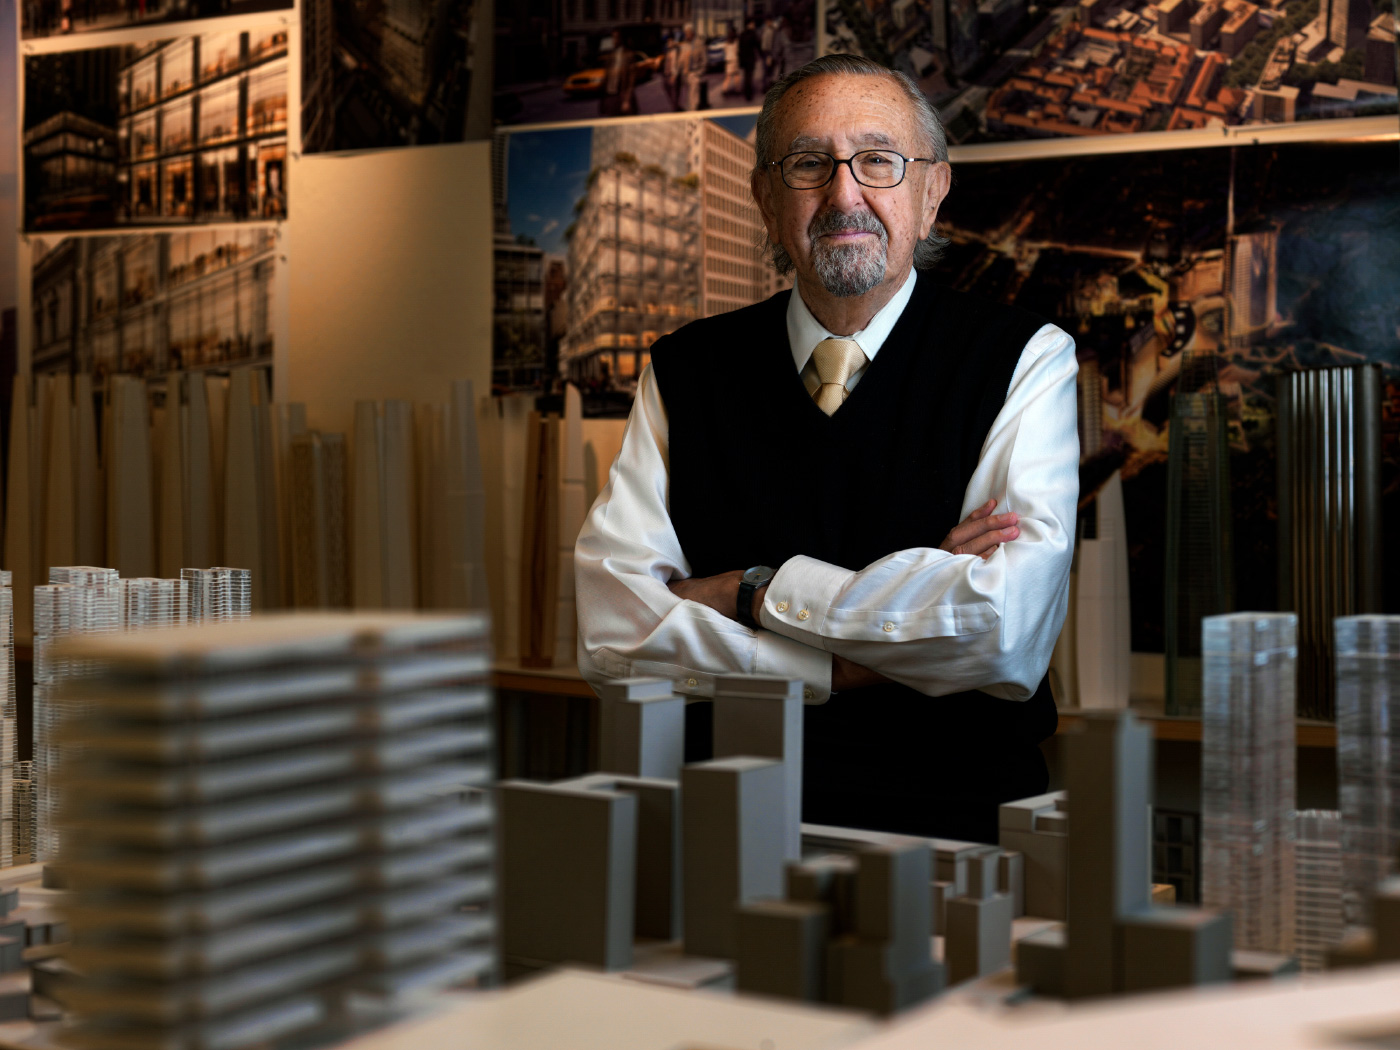 一位年长的男子César Pelli站在建筑模型中间